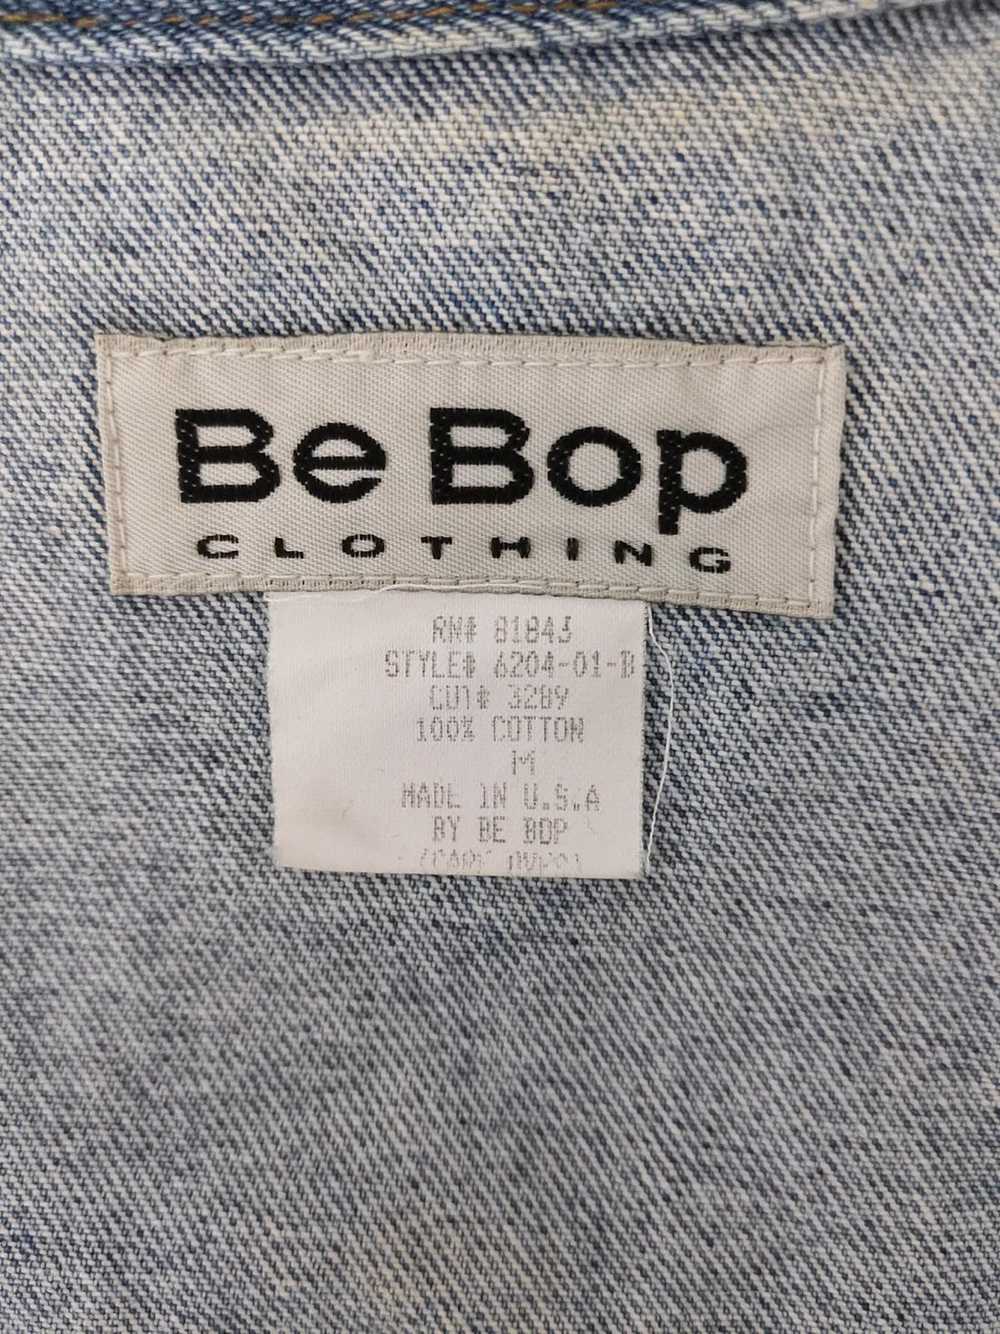 Be Bop Clothing Vest Jacket - image 3